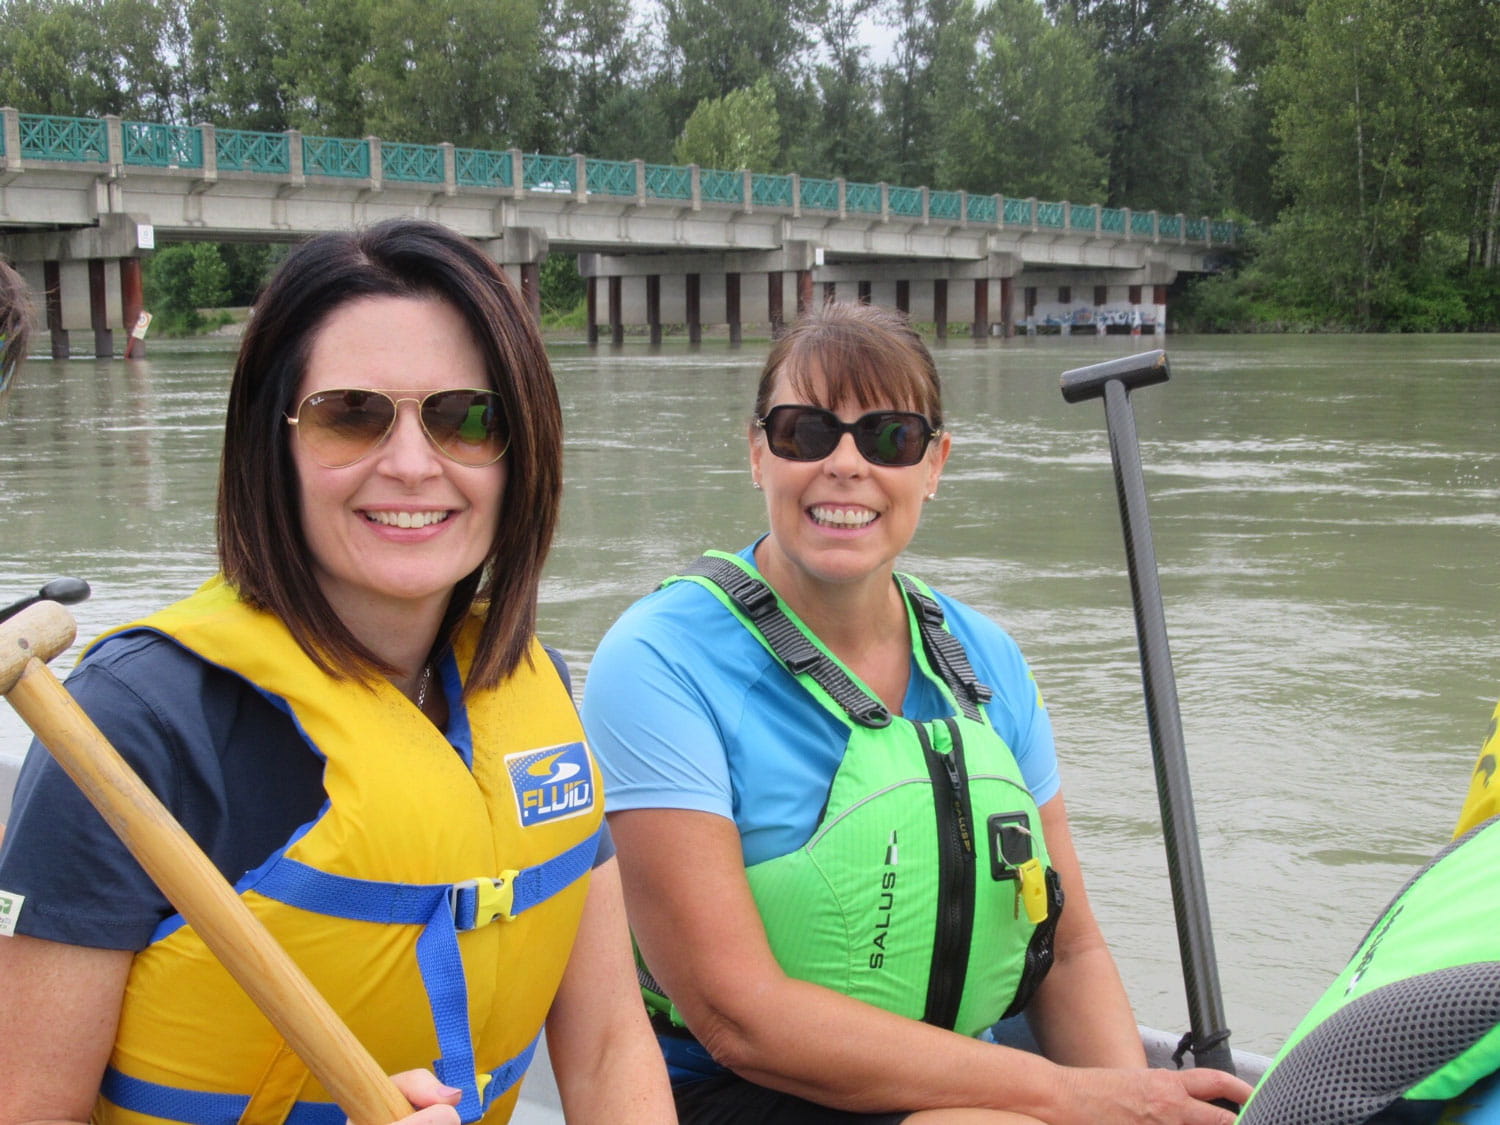 Two women holding oars